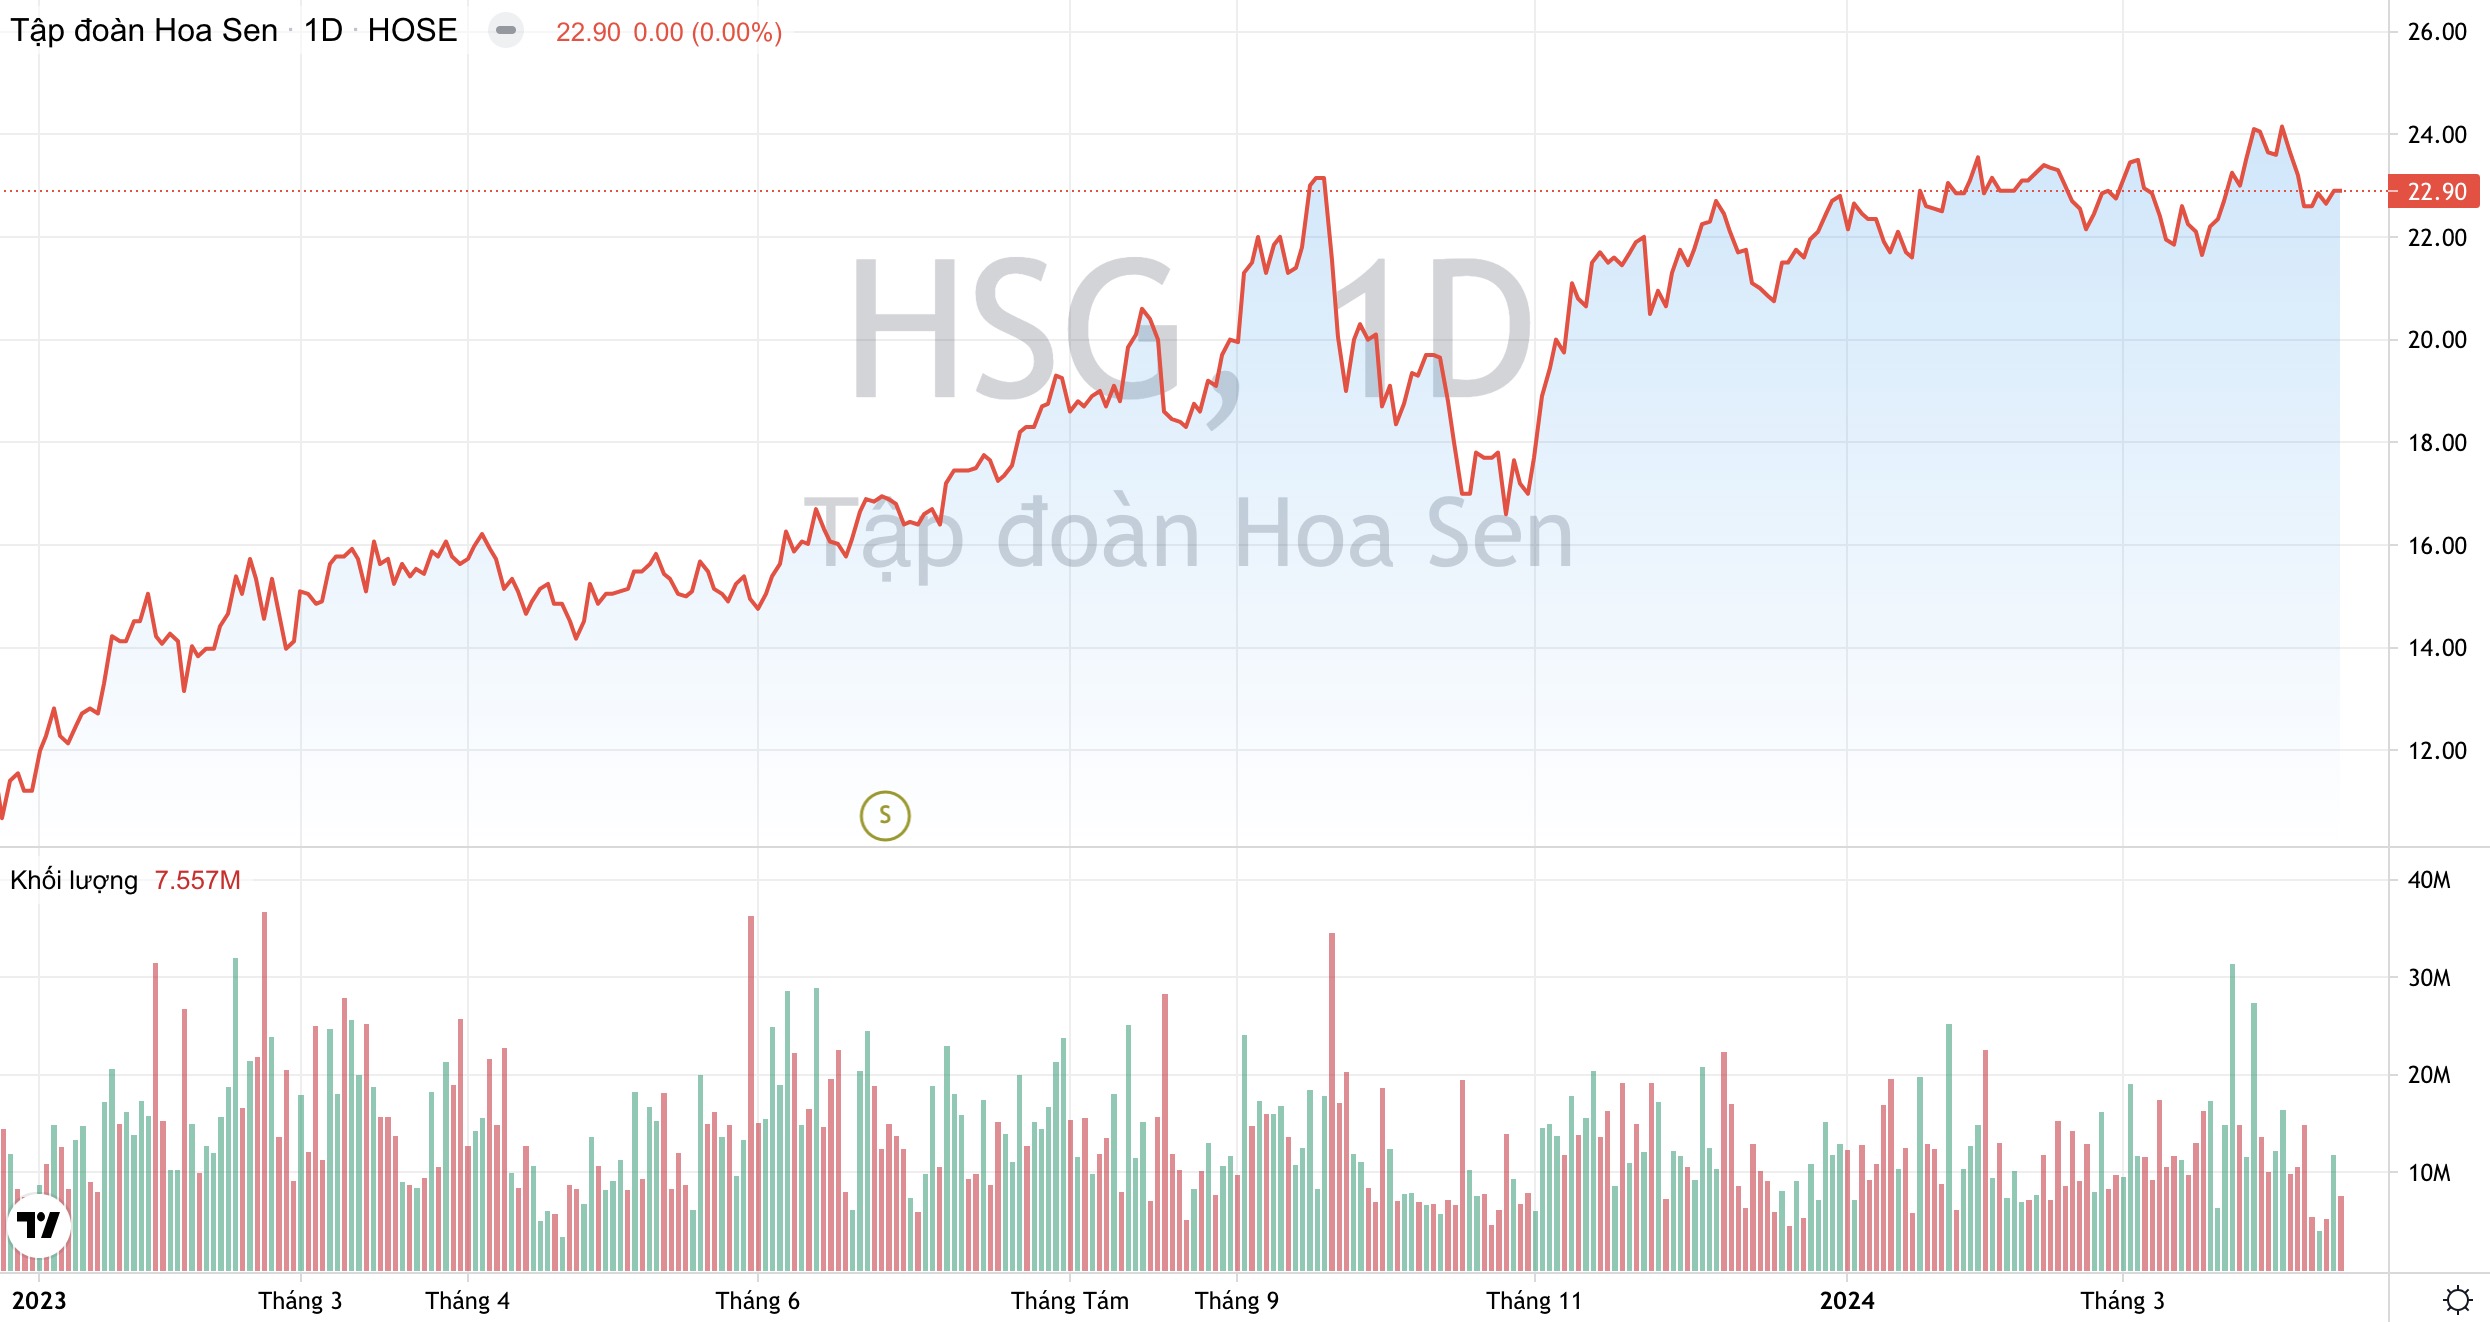 Tập đoàn Hoa Sen HSG : Chuẩn bị chia cổ tức, kỳ vọng lãi ròng năm nay vượt xa kế hoạch